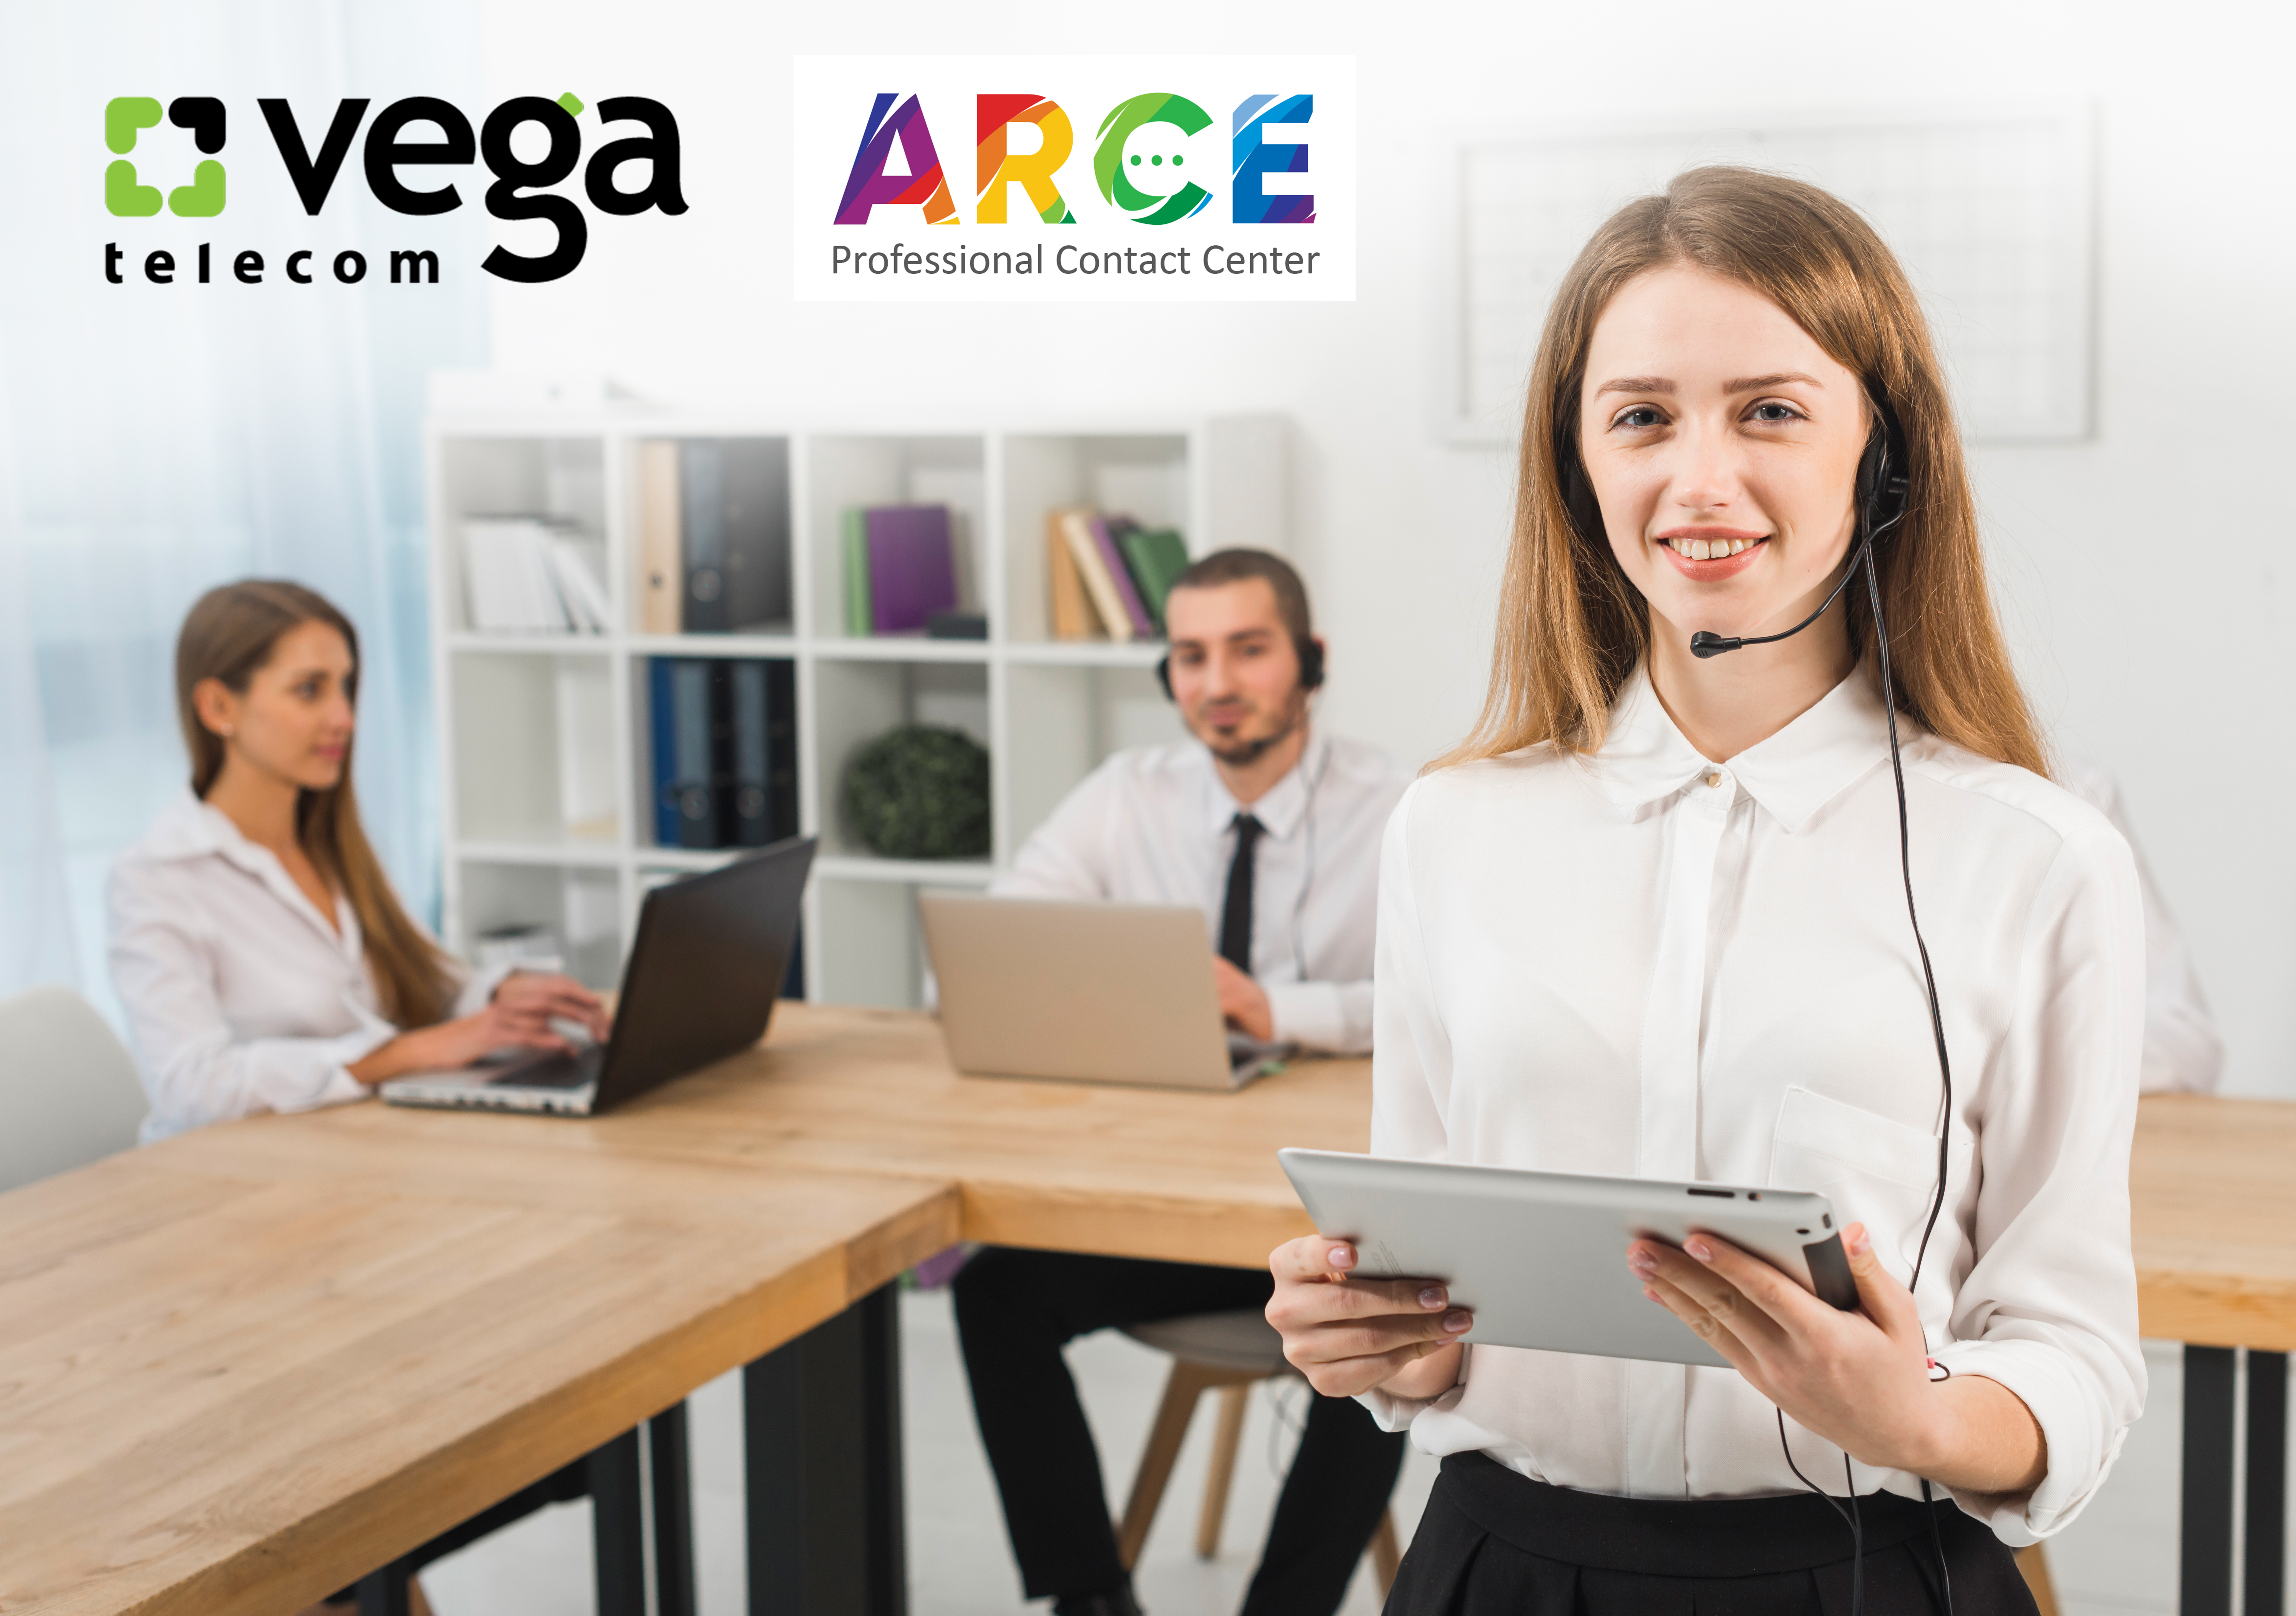 vega new call-center arce